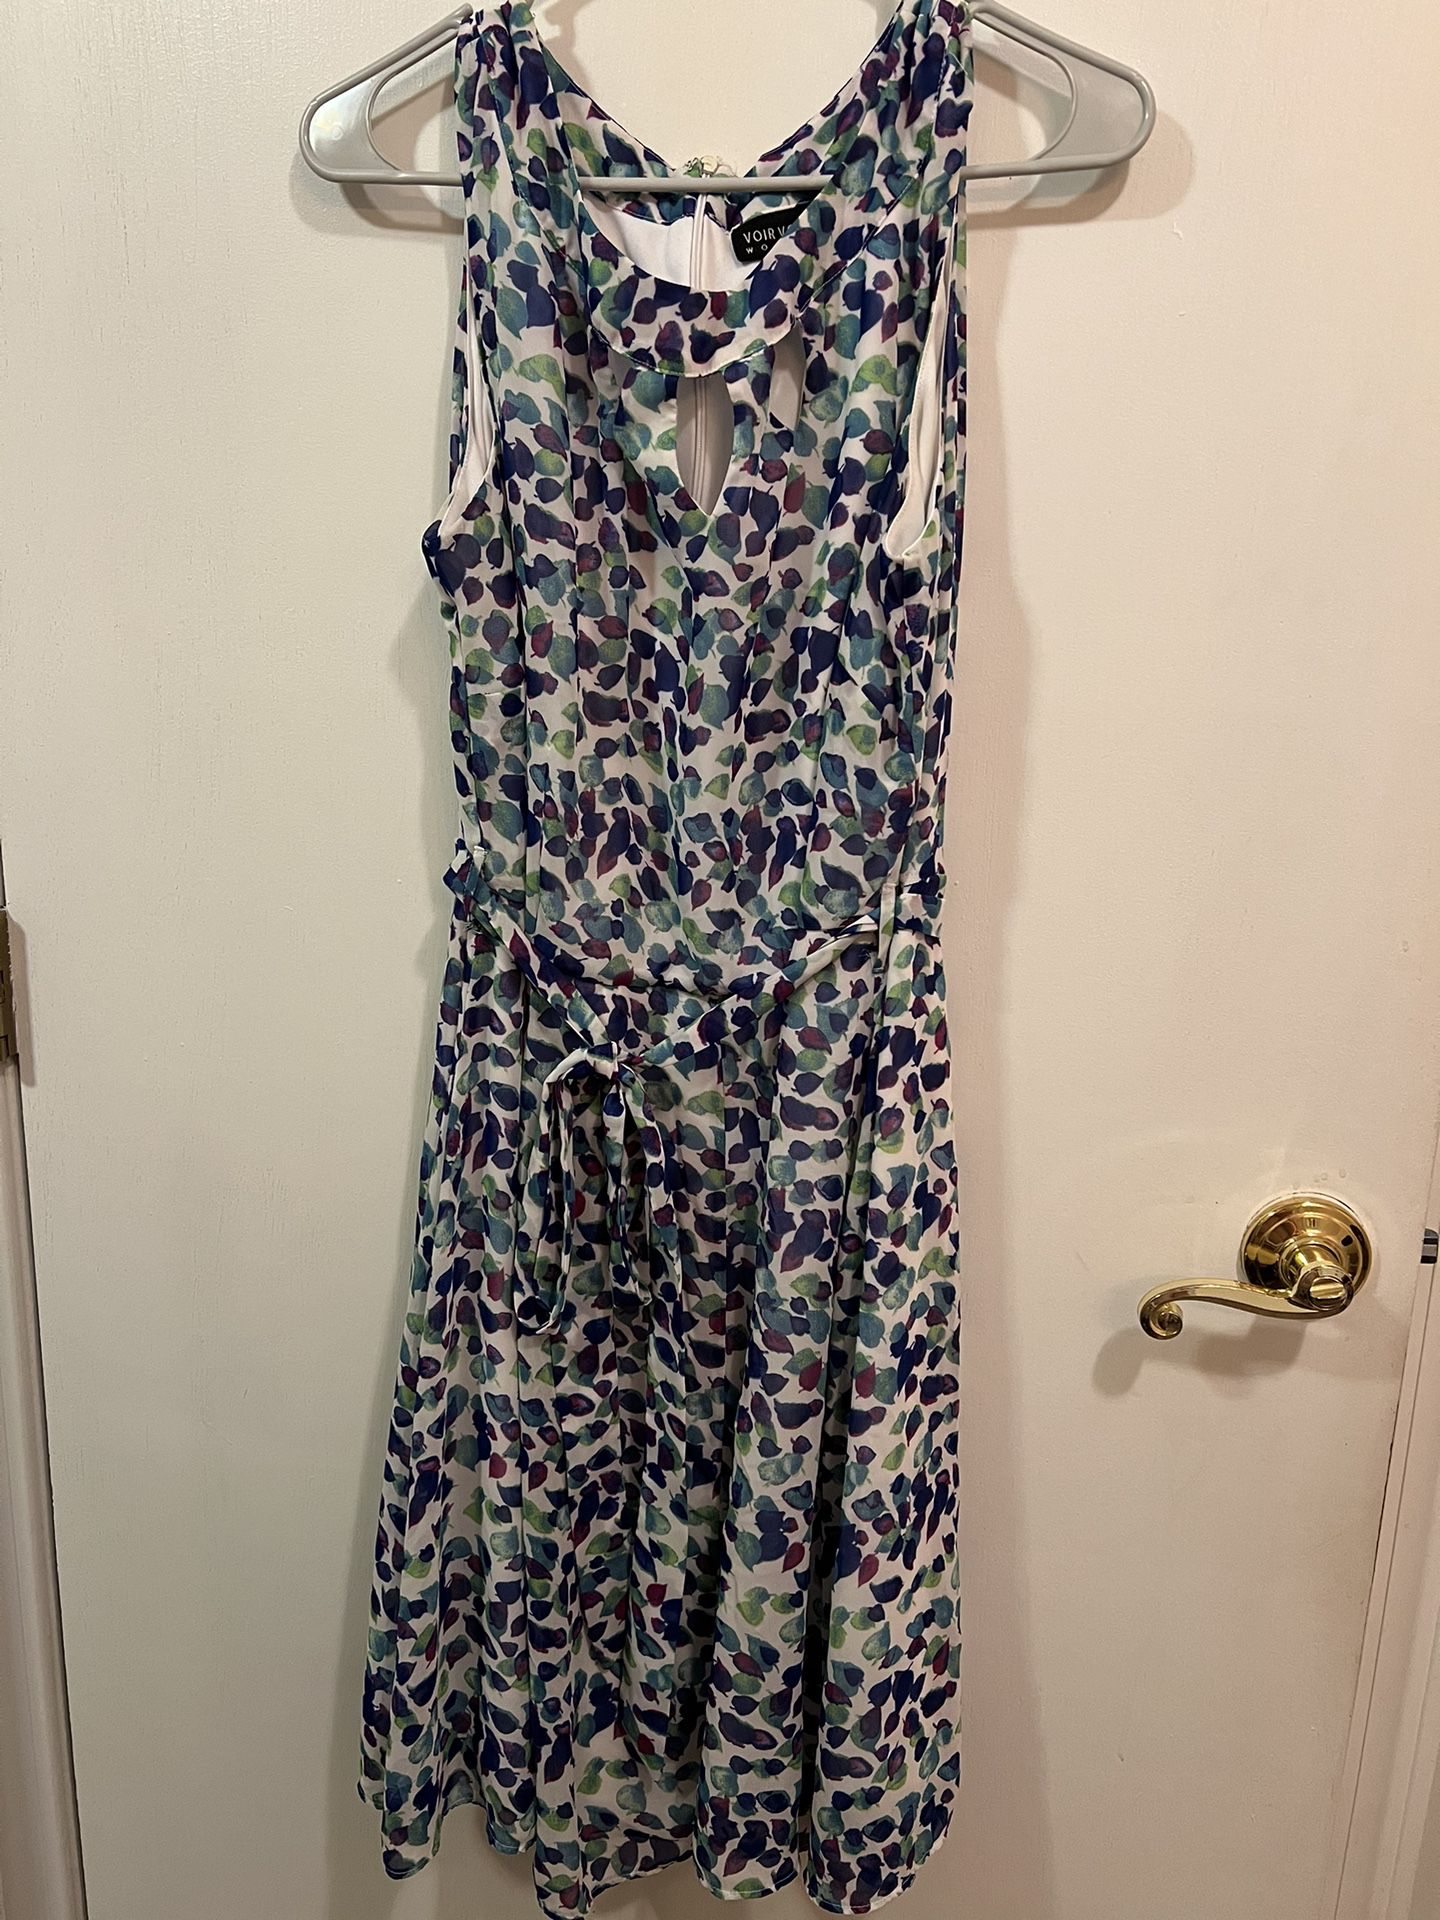 Dress Size 14W